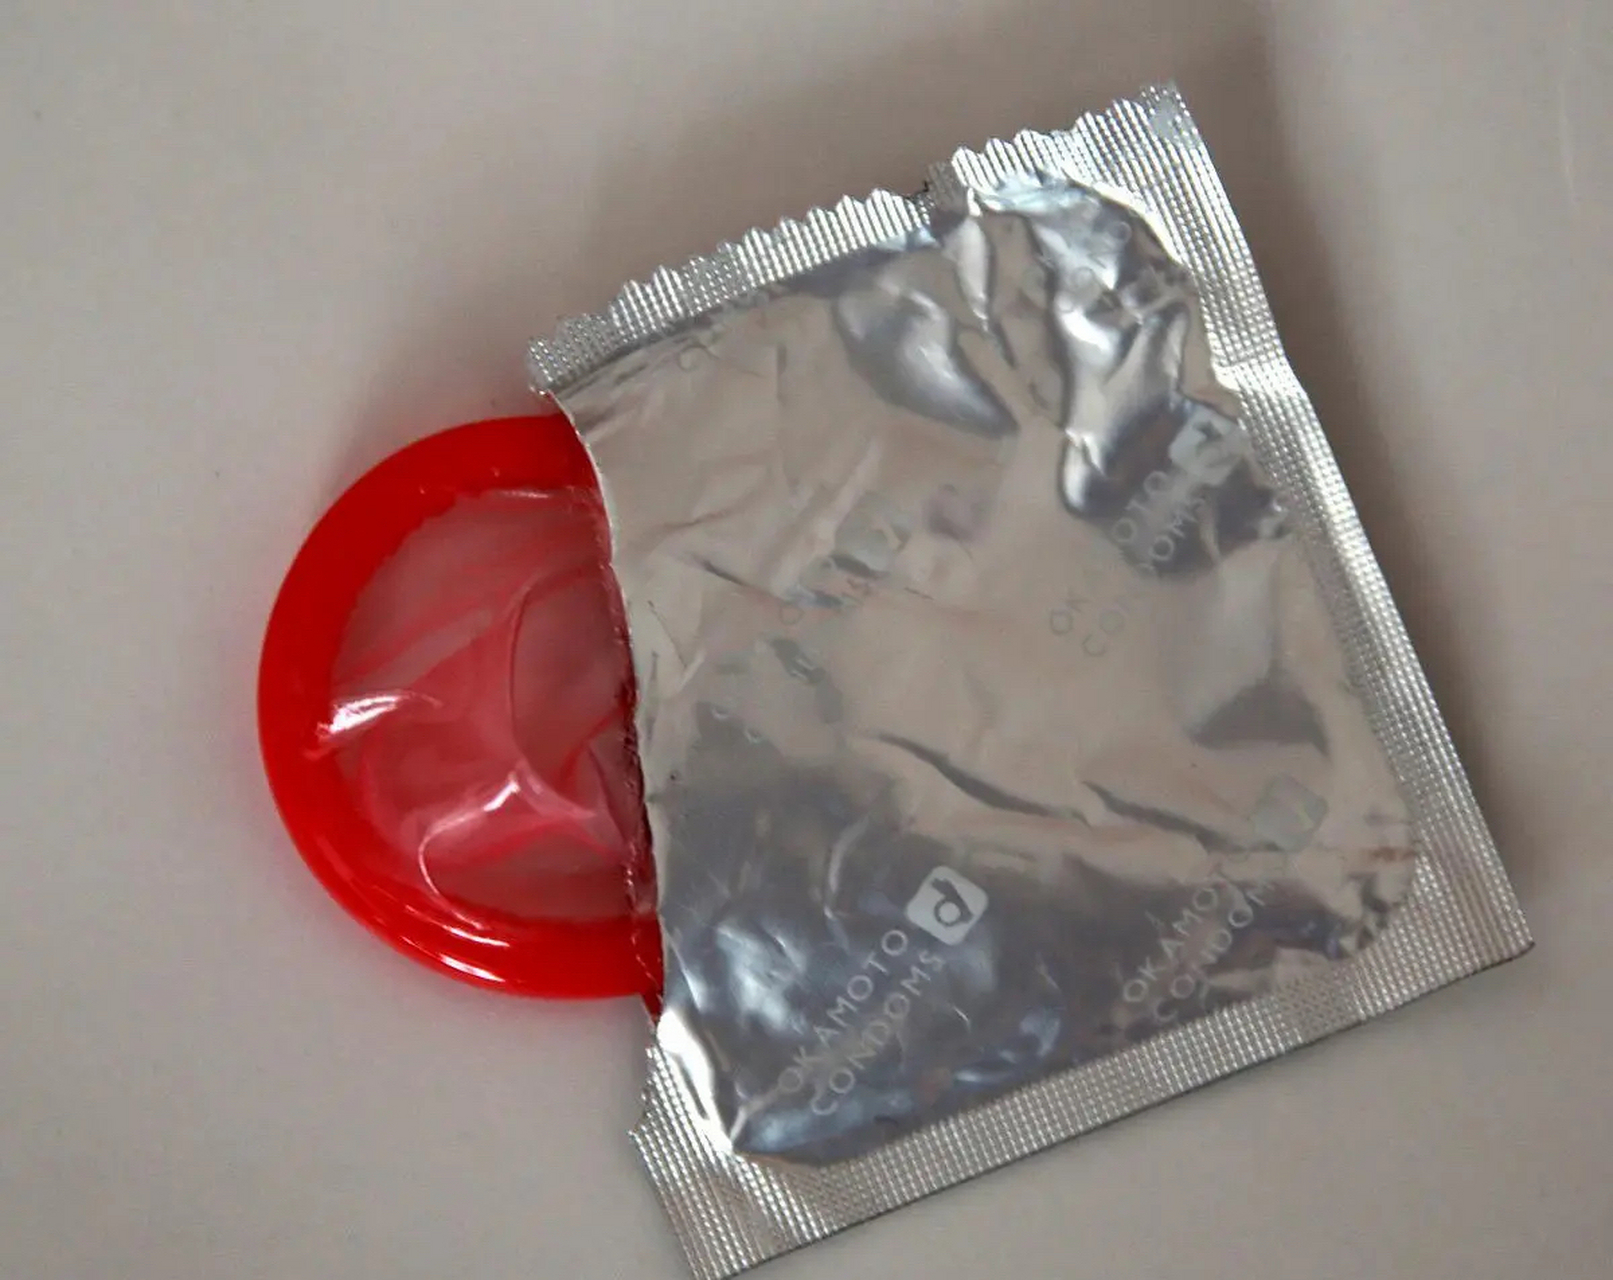 酒店用过后的避孕套图片